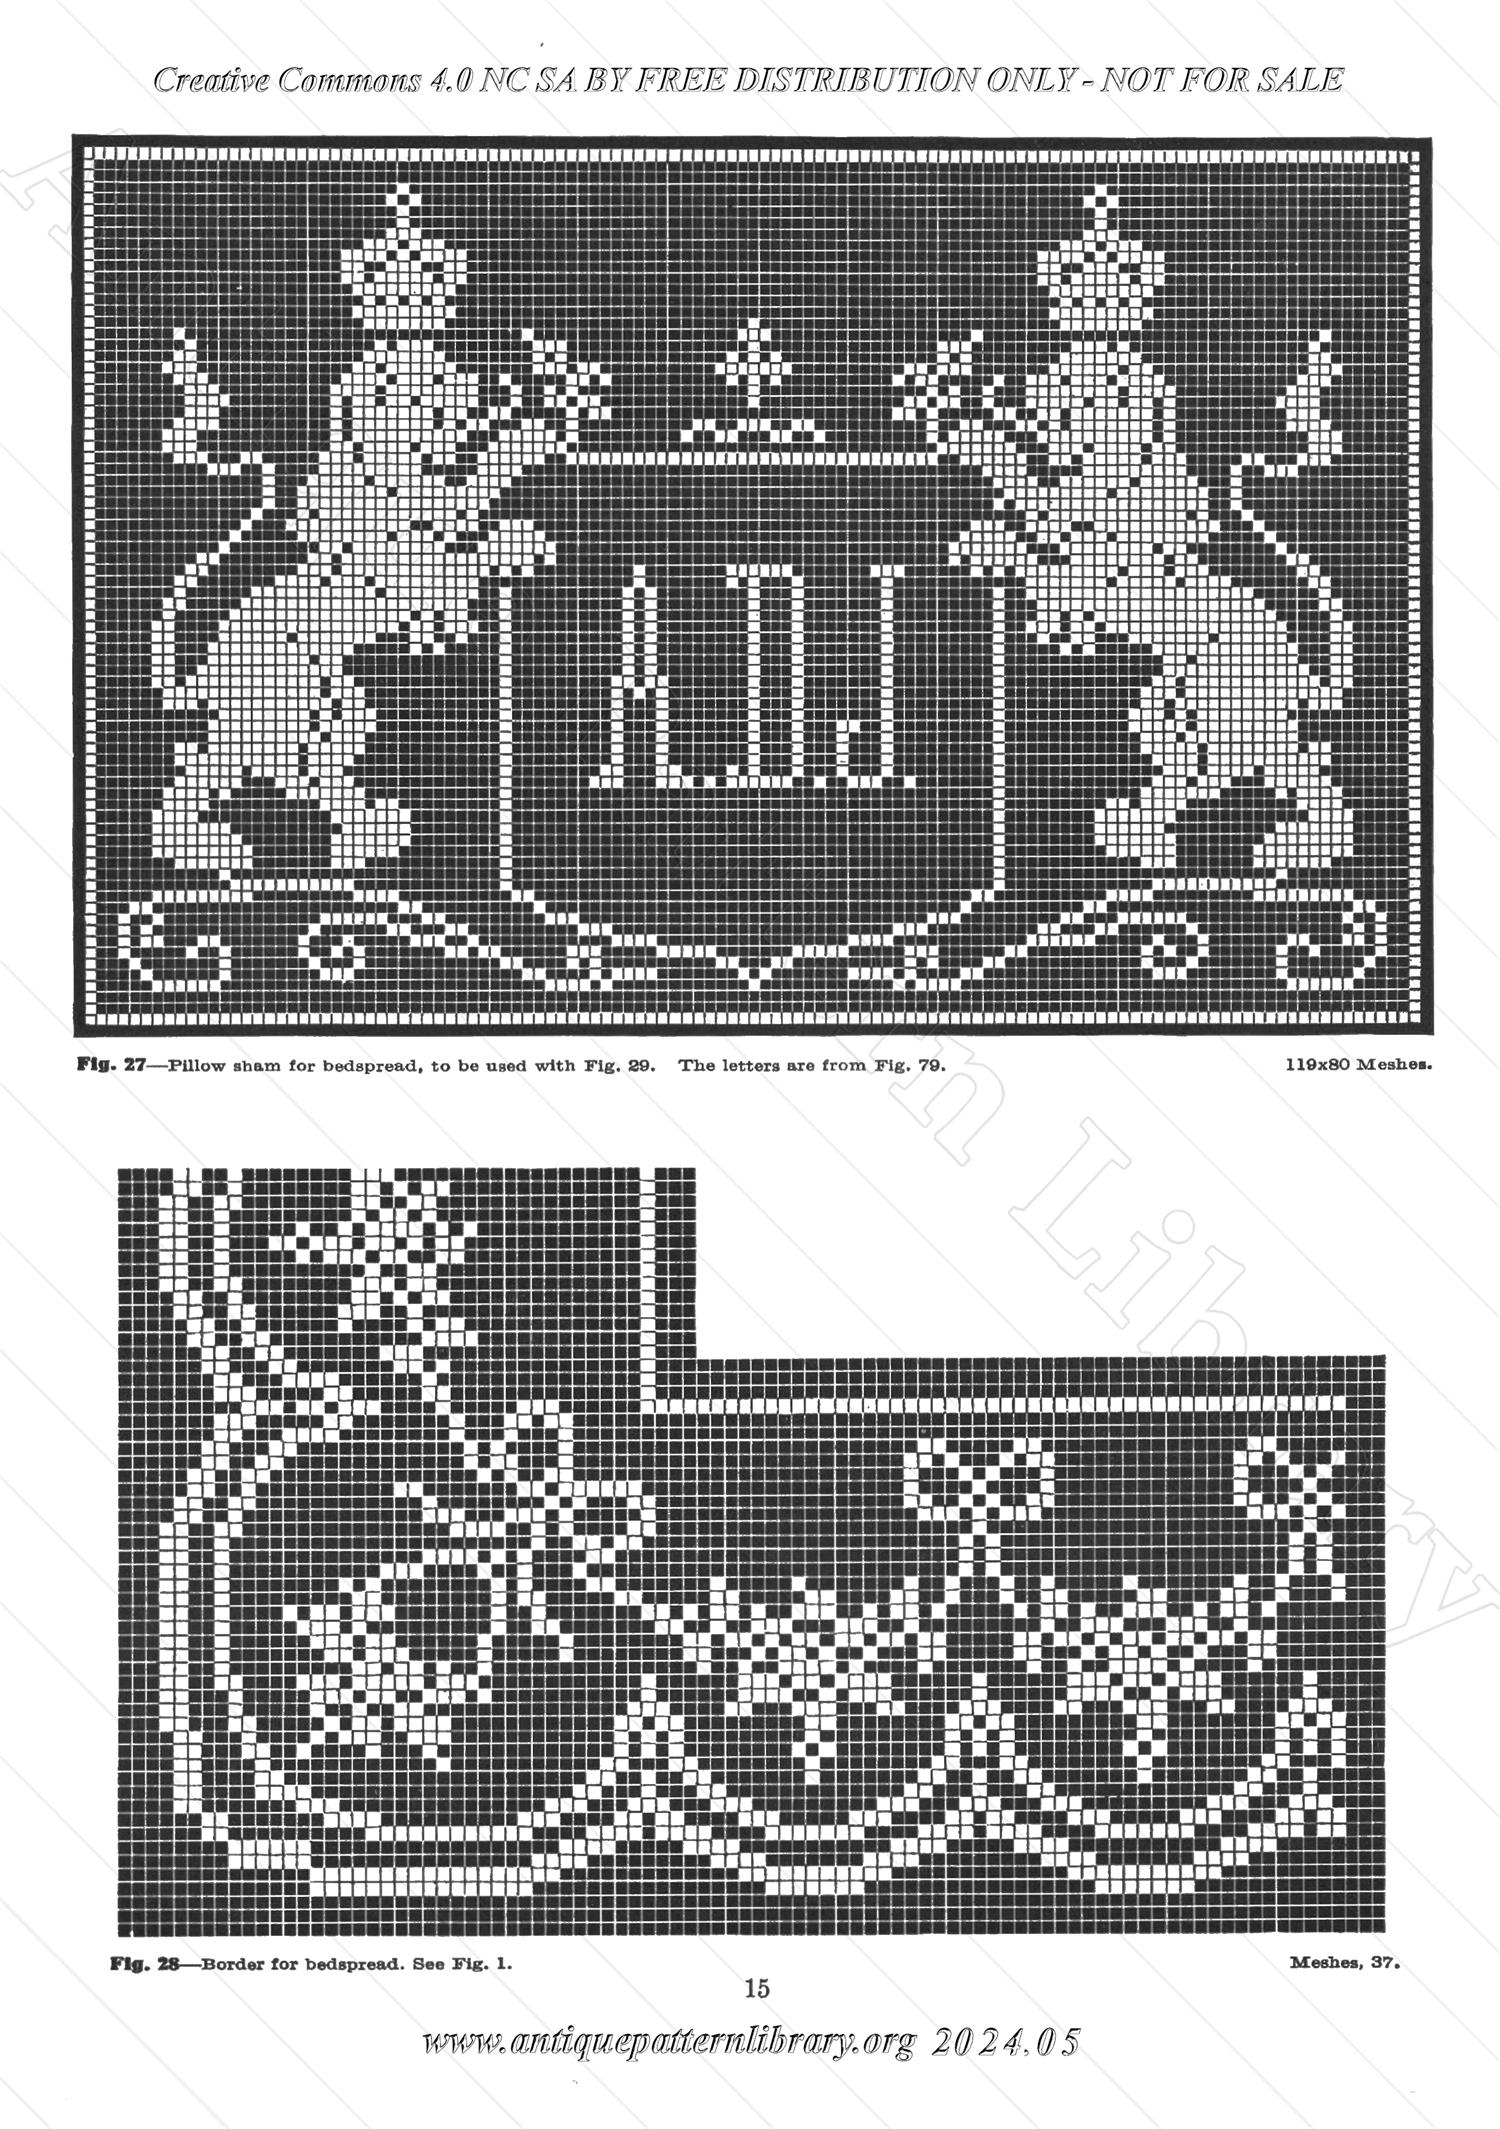 J-PA132 Filet Crochet Designs